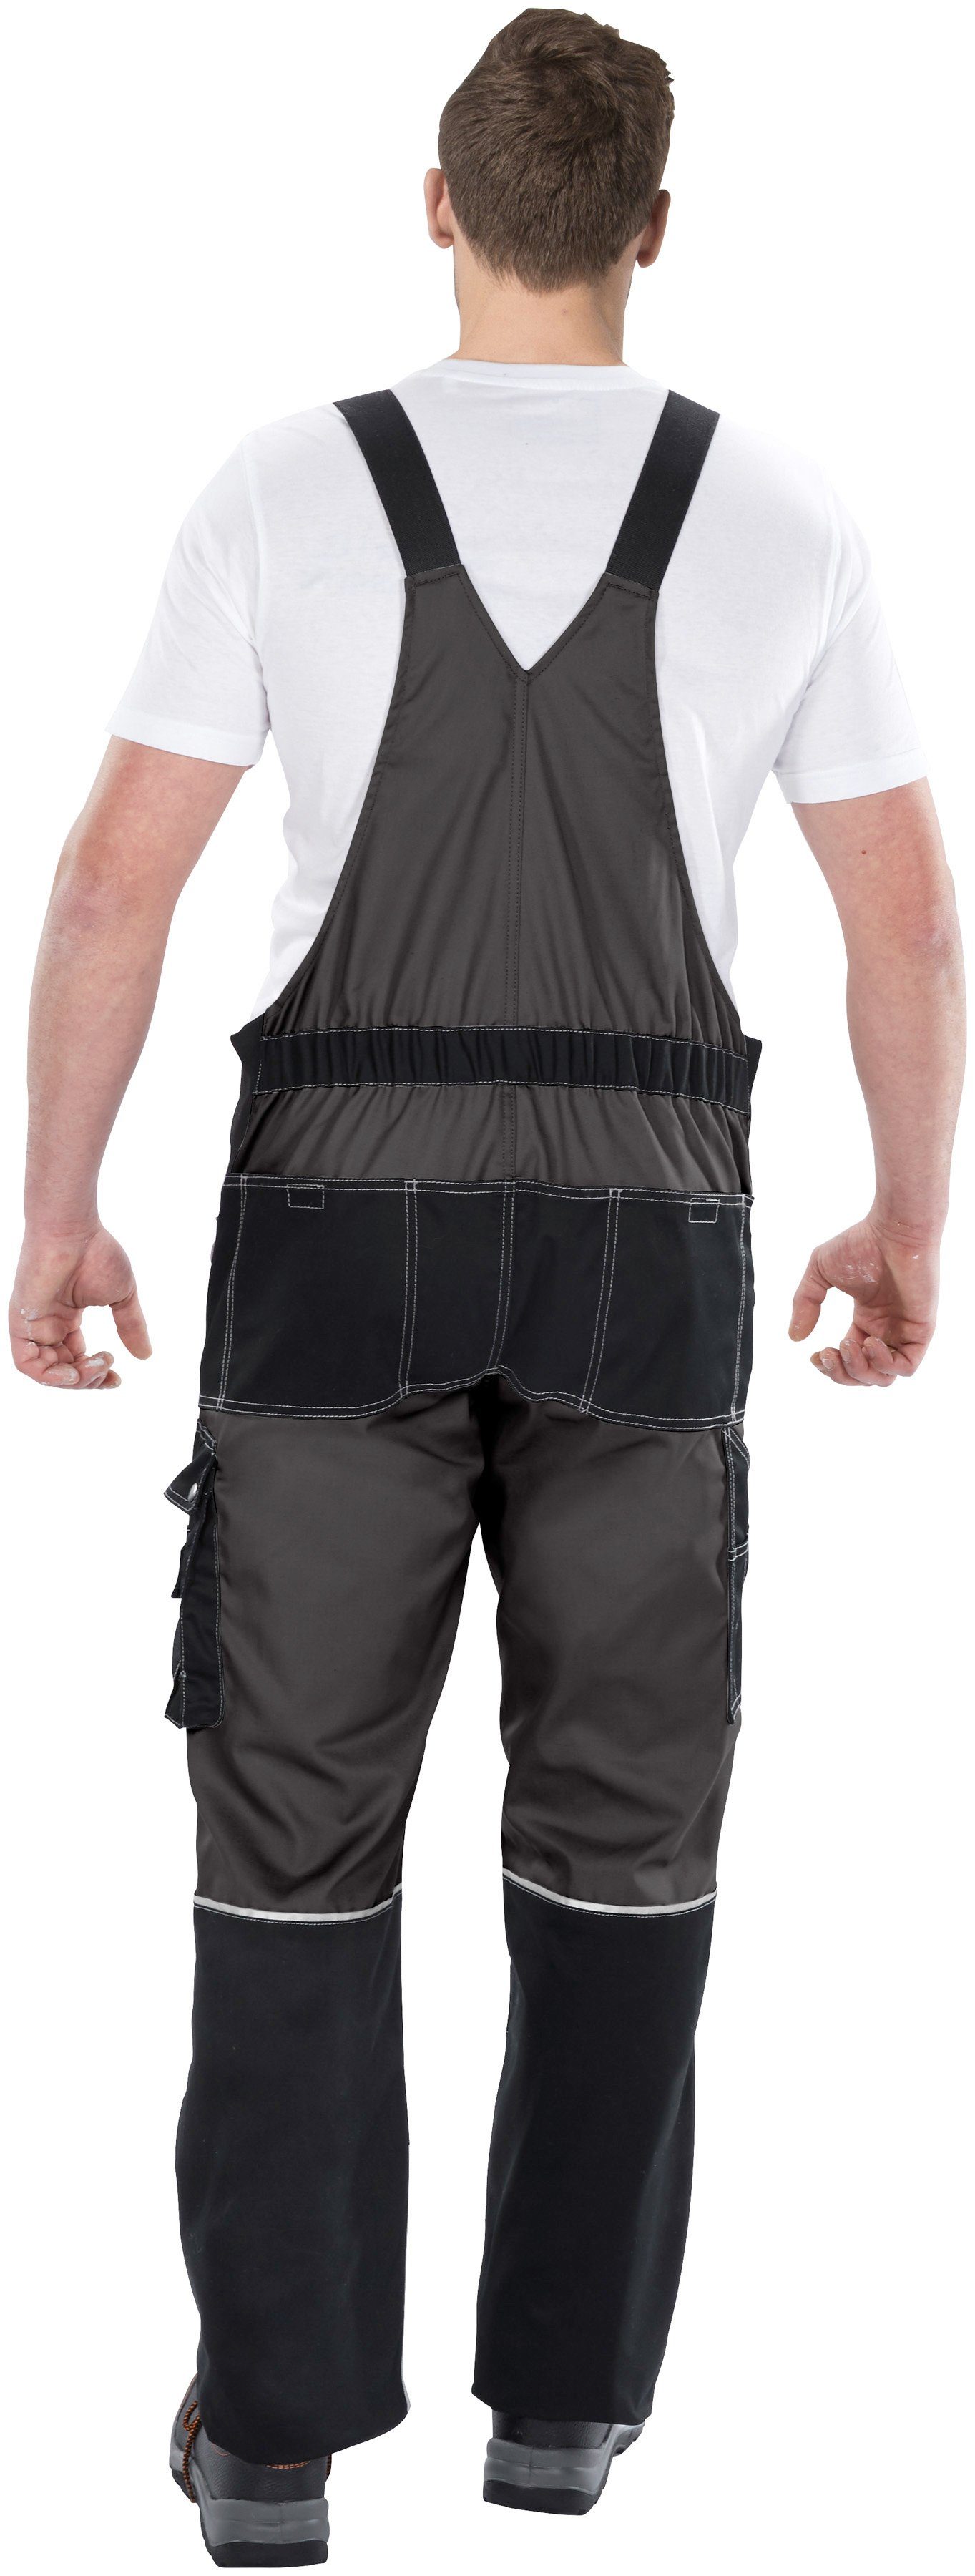 Northern Country 11 grau-schwarz Worker Taschen verstärktem Latzhose mit Bund, Kniebereich, dehnbarer mit robust